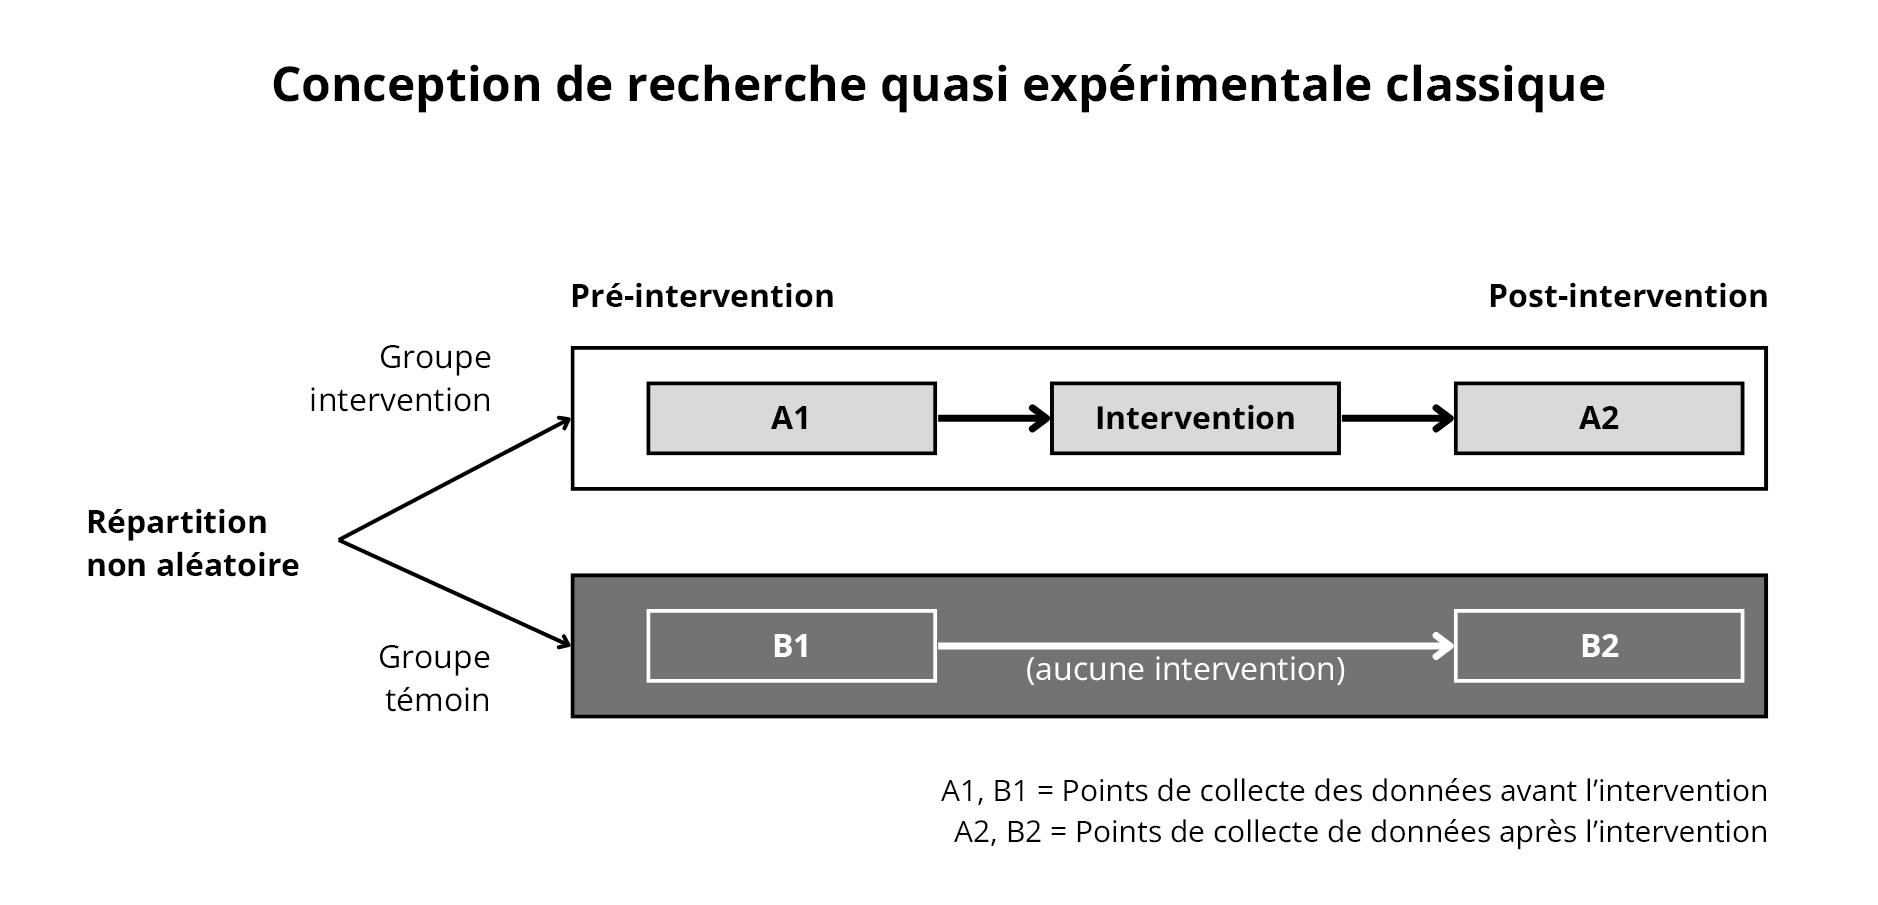 Figure 5. Conception quasi expérimentale classique. Adaptation de https://www.k4health.org/toolkits/measuring-success/types-evaluation-designs